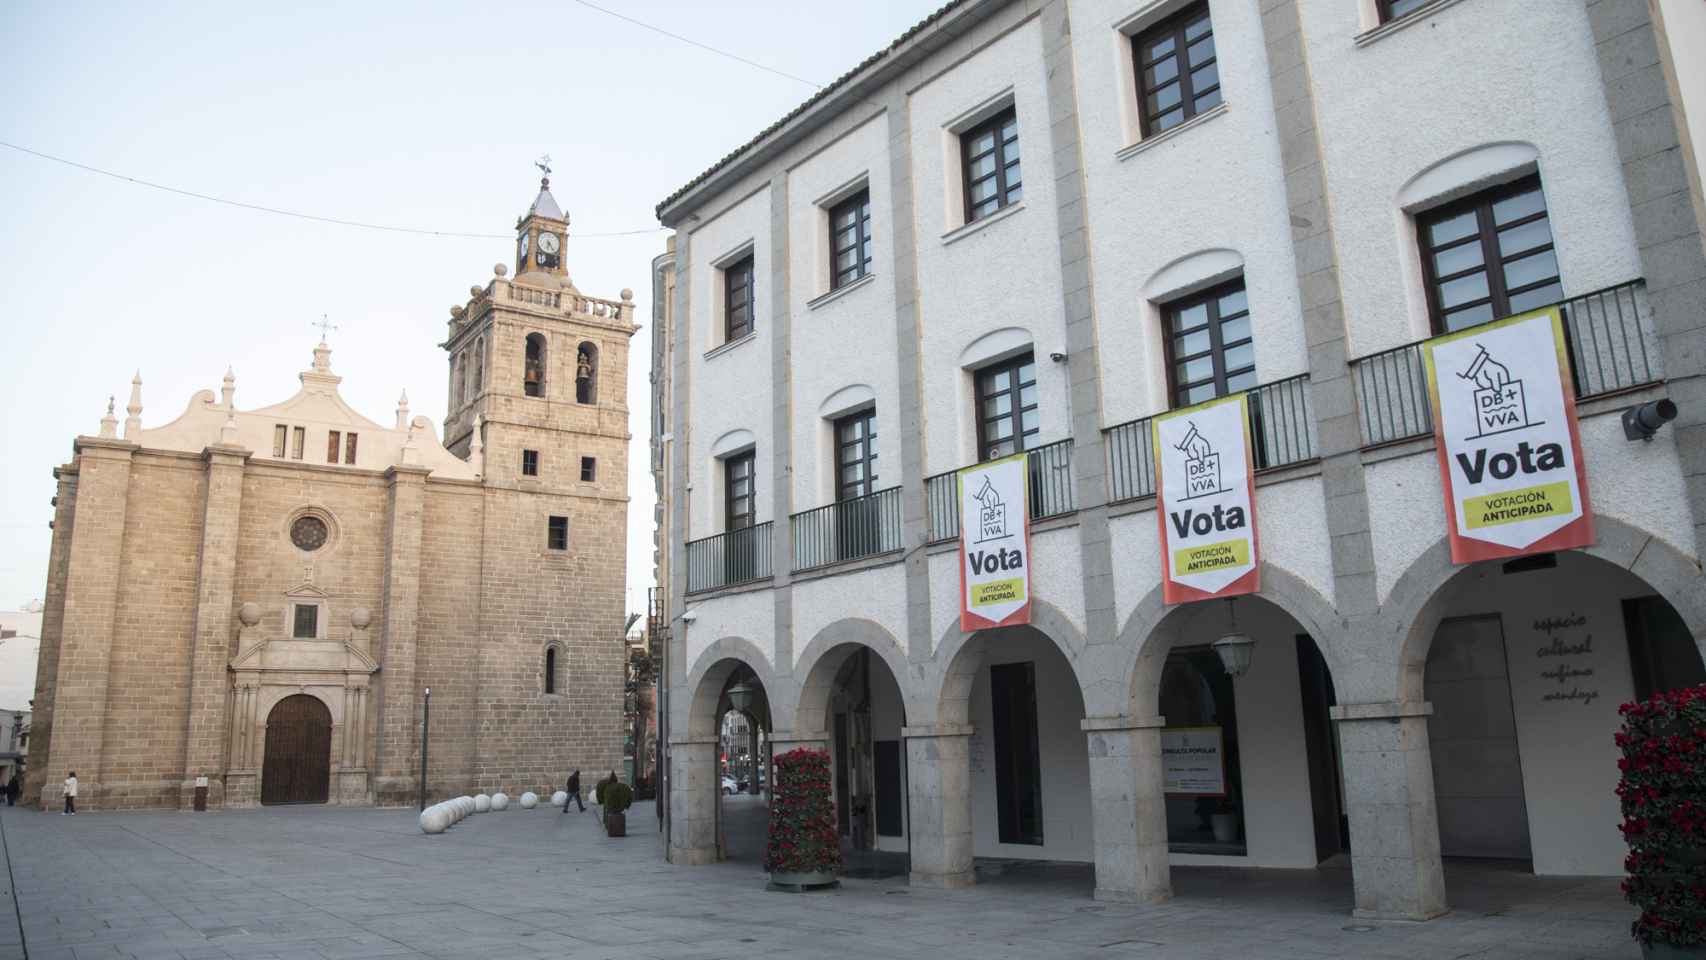 La Plaza de España de Villanueva de la Serena, adornada con motivo de la consulta popular del próximo 20 de febrero.